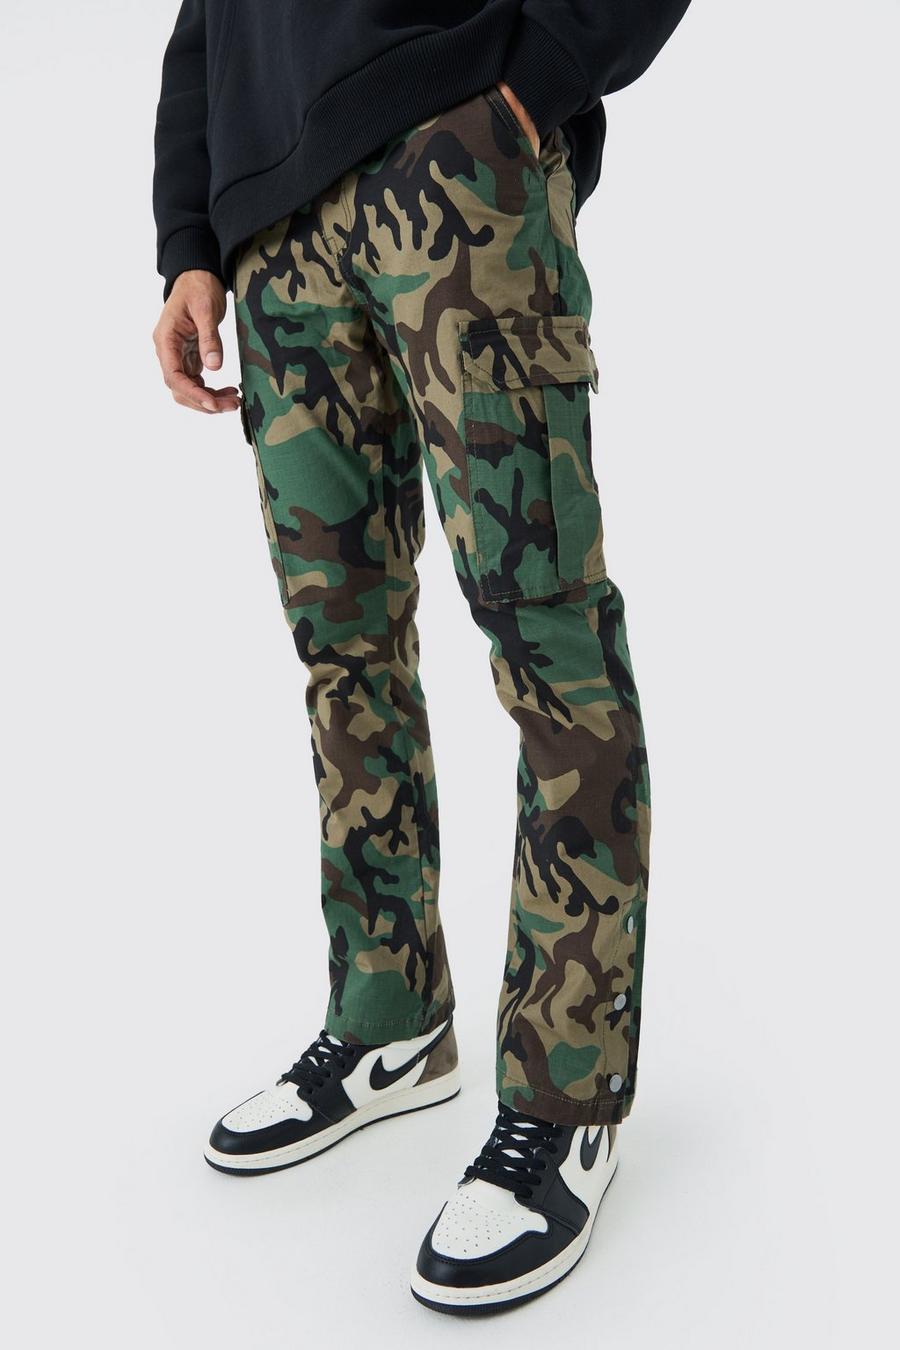 Pantaloni Cargo Slim Fit a zampa in nylon ripstop in fantasia militare con bottoni a pressione sul fondo, Khaki